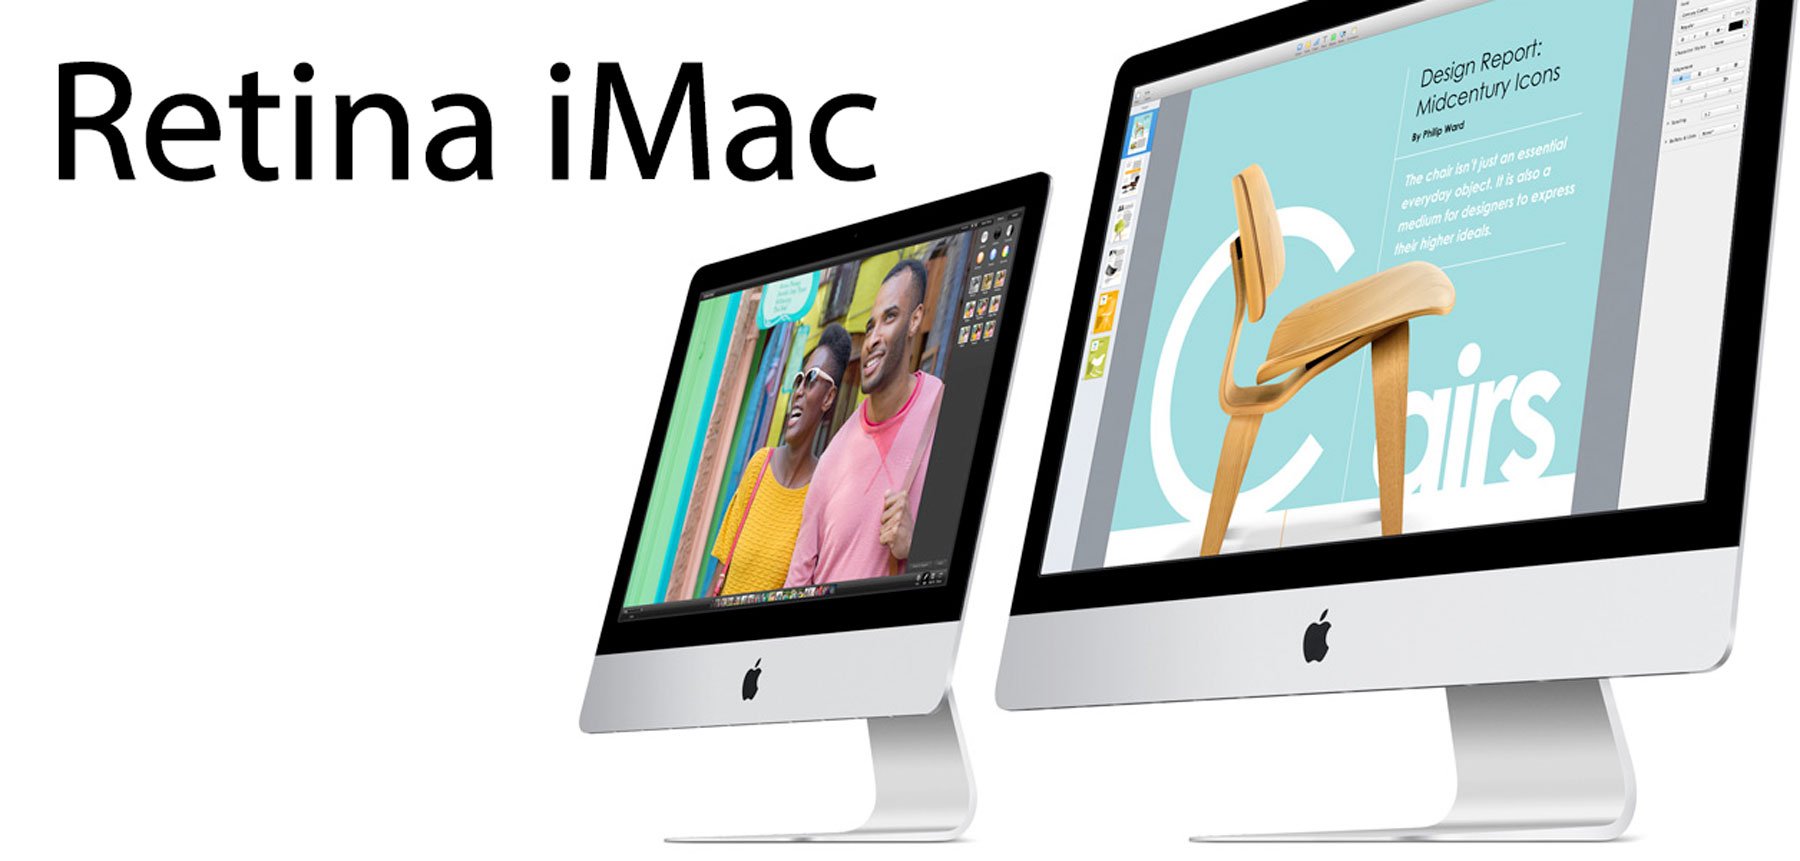 Retina iMac kommt, Retina MacBook Air später 2